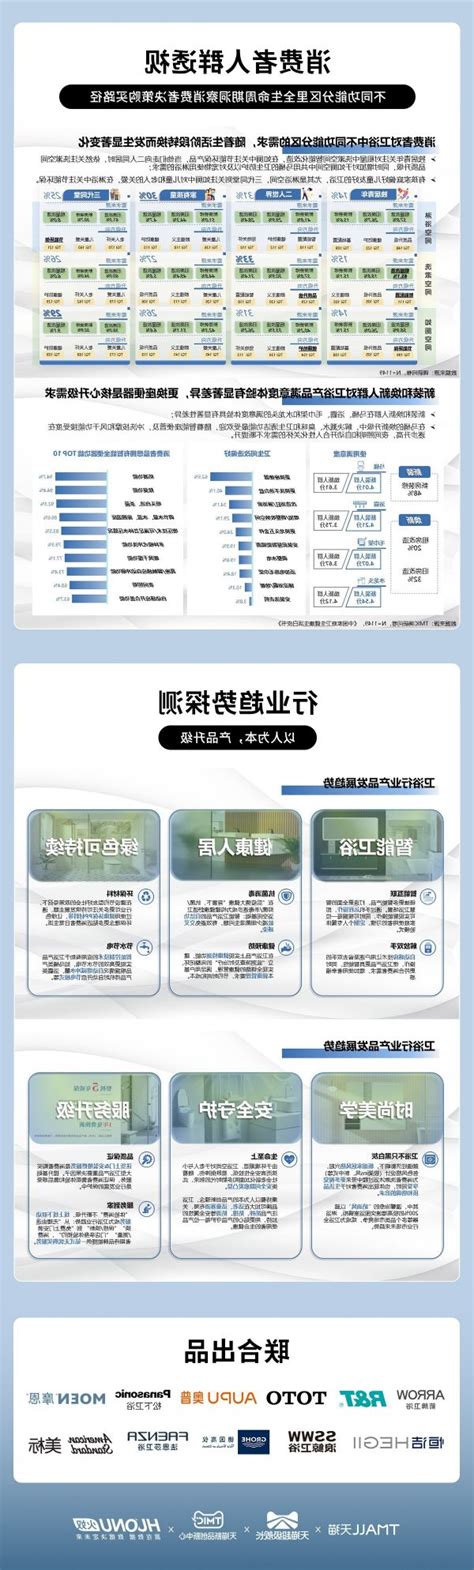 木桶浴缸市场分析报告_2021-2027年中国木桶浴缸市场研究与投资战略咨询报告_中国产业研究报告网